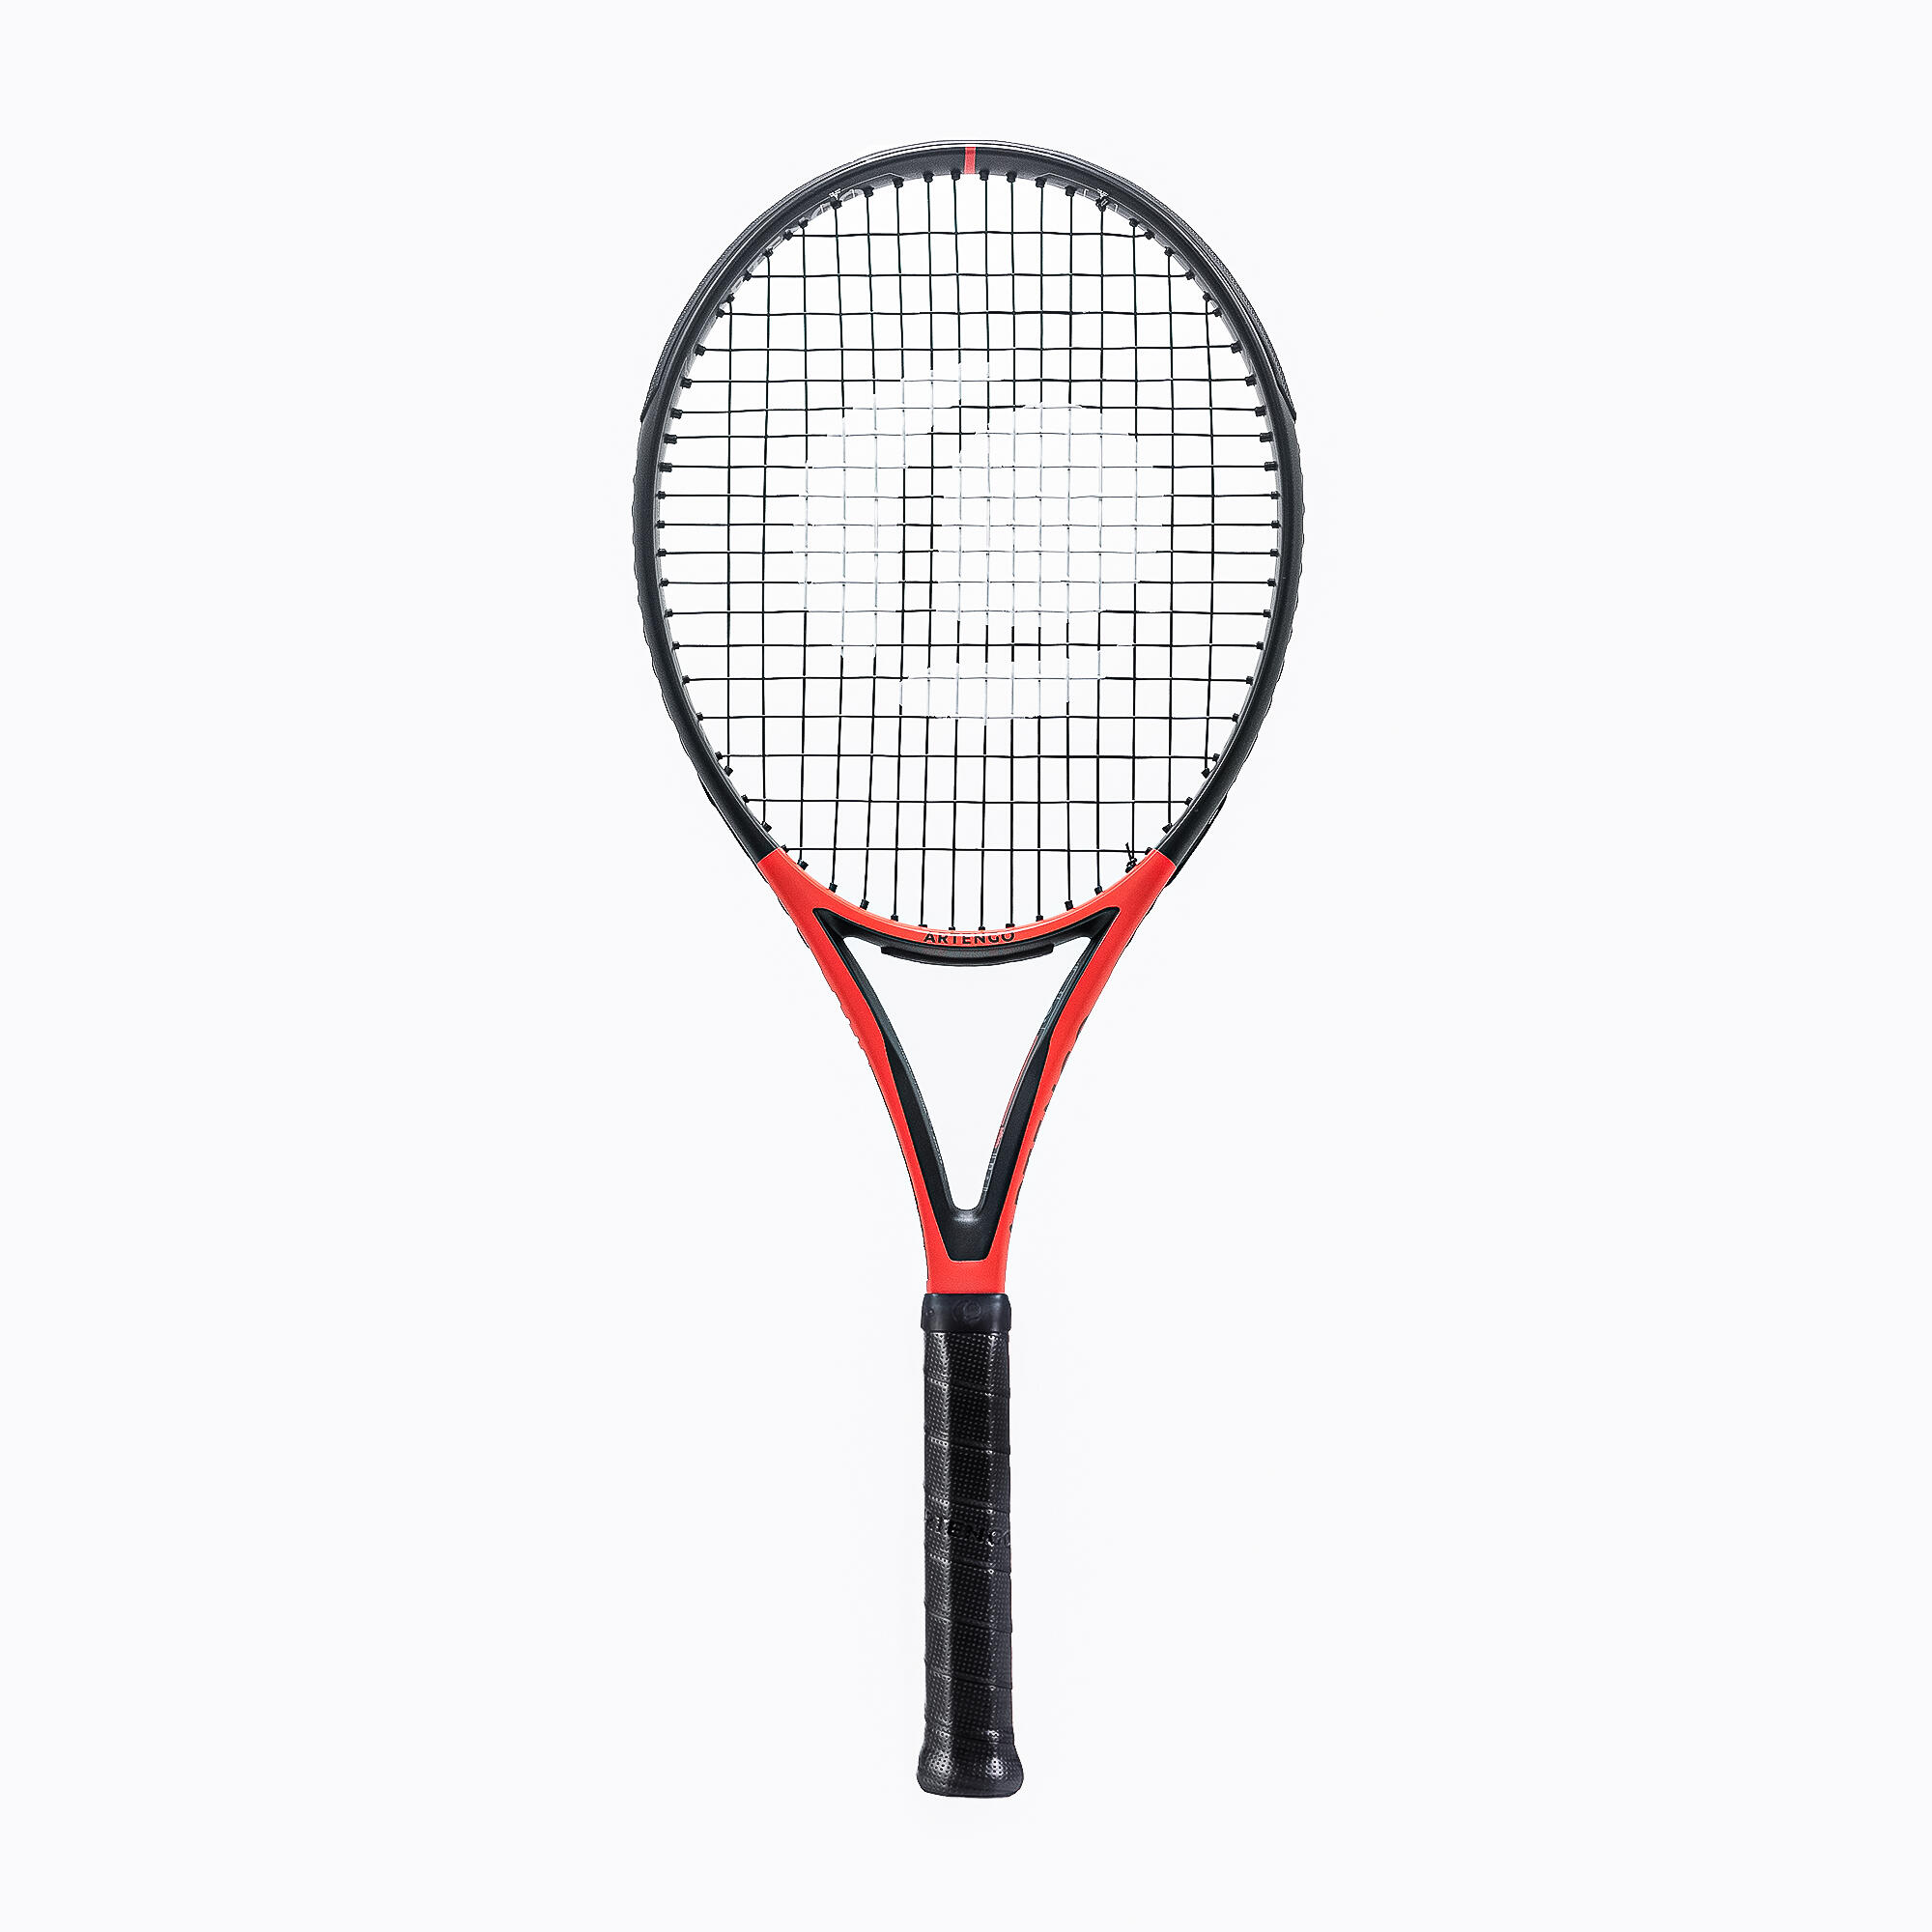 Rachetă Tenis TR990 Power Pro+ Roșu-Negru Adulți La Oferta Online ARTENGO imagine La Oferta Online